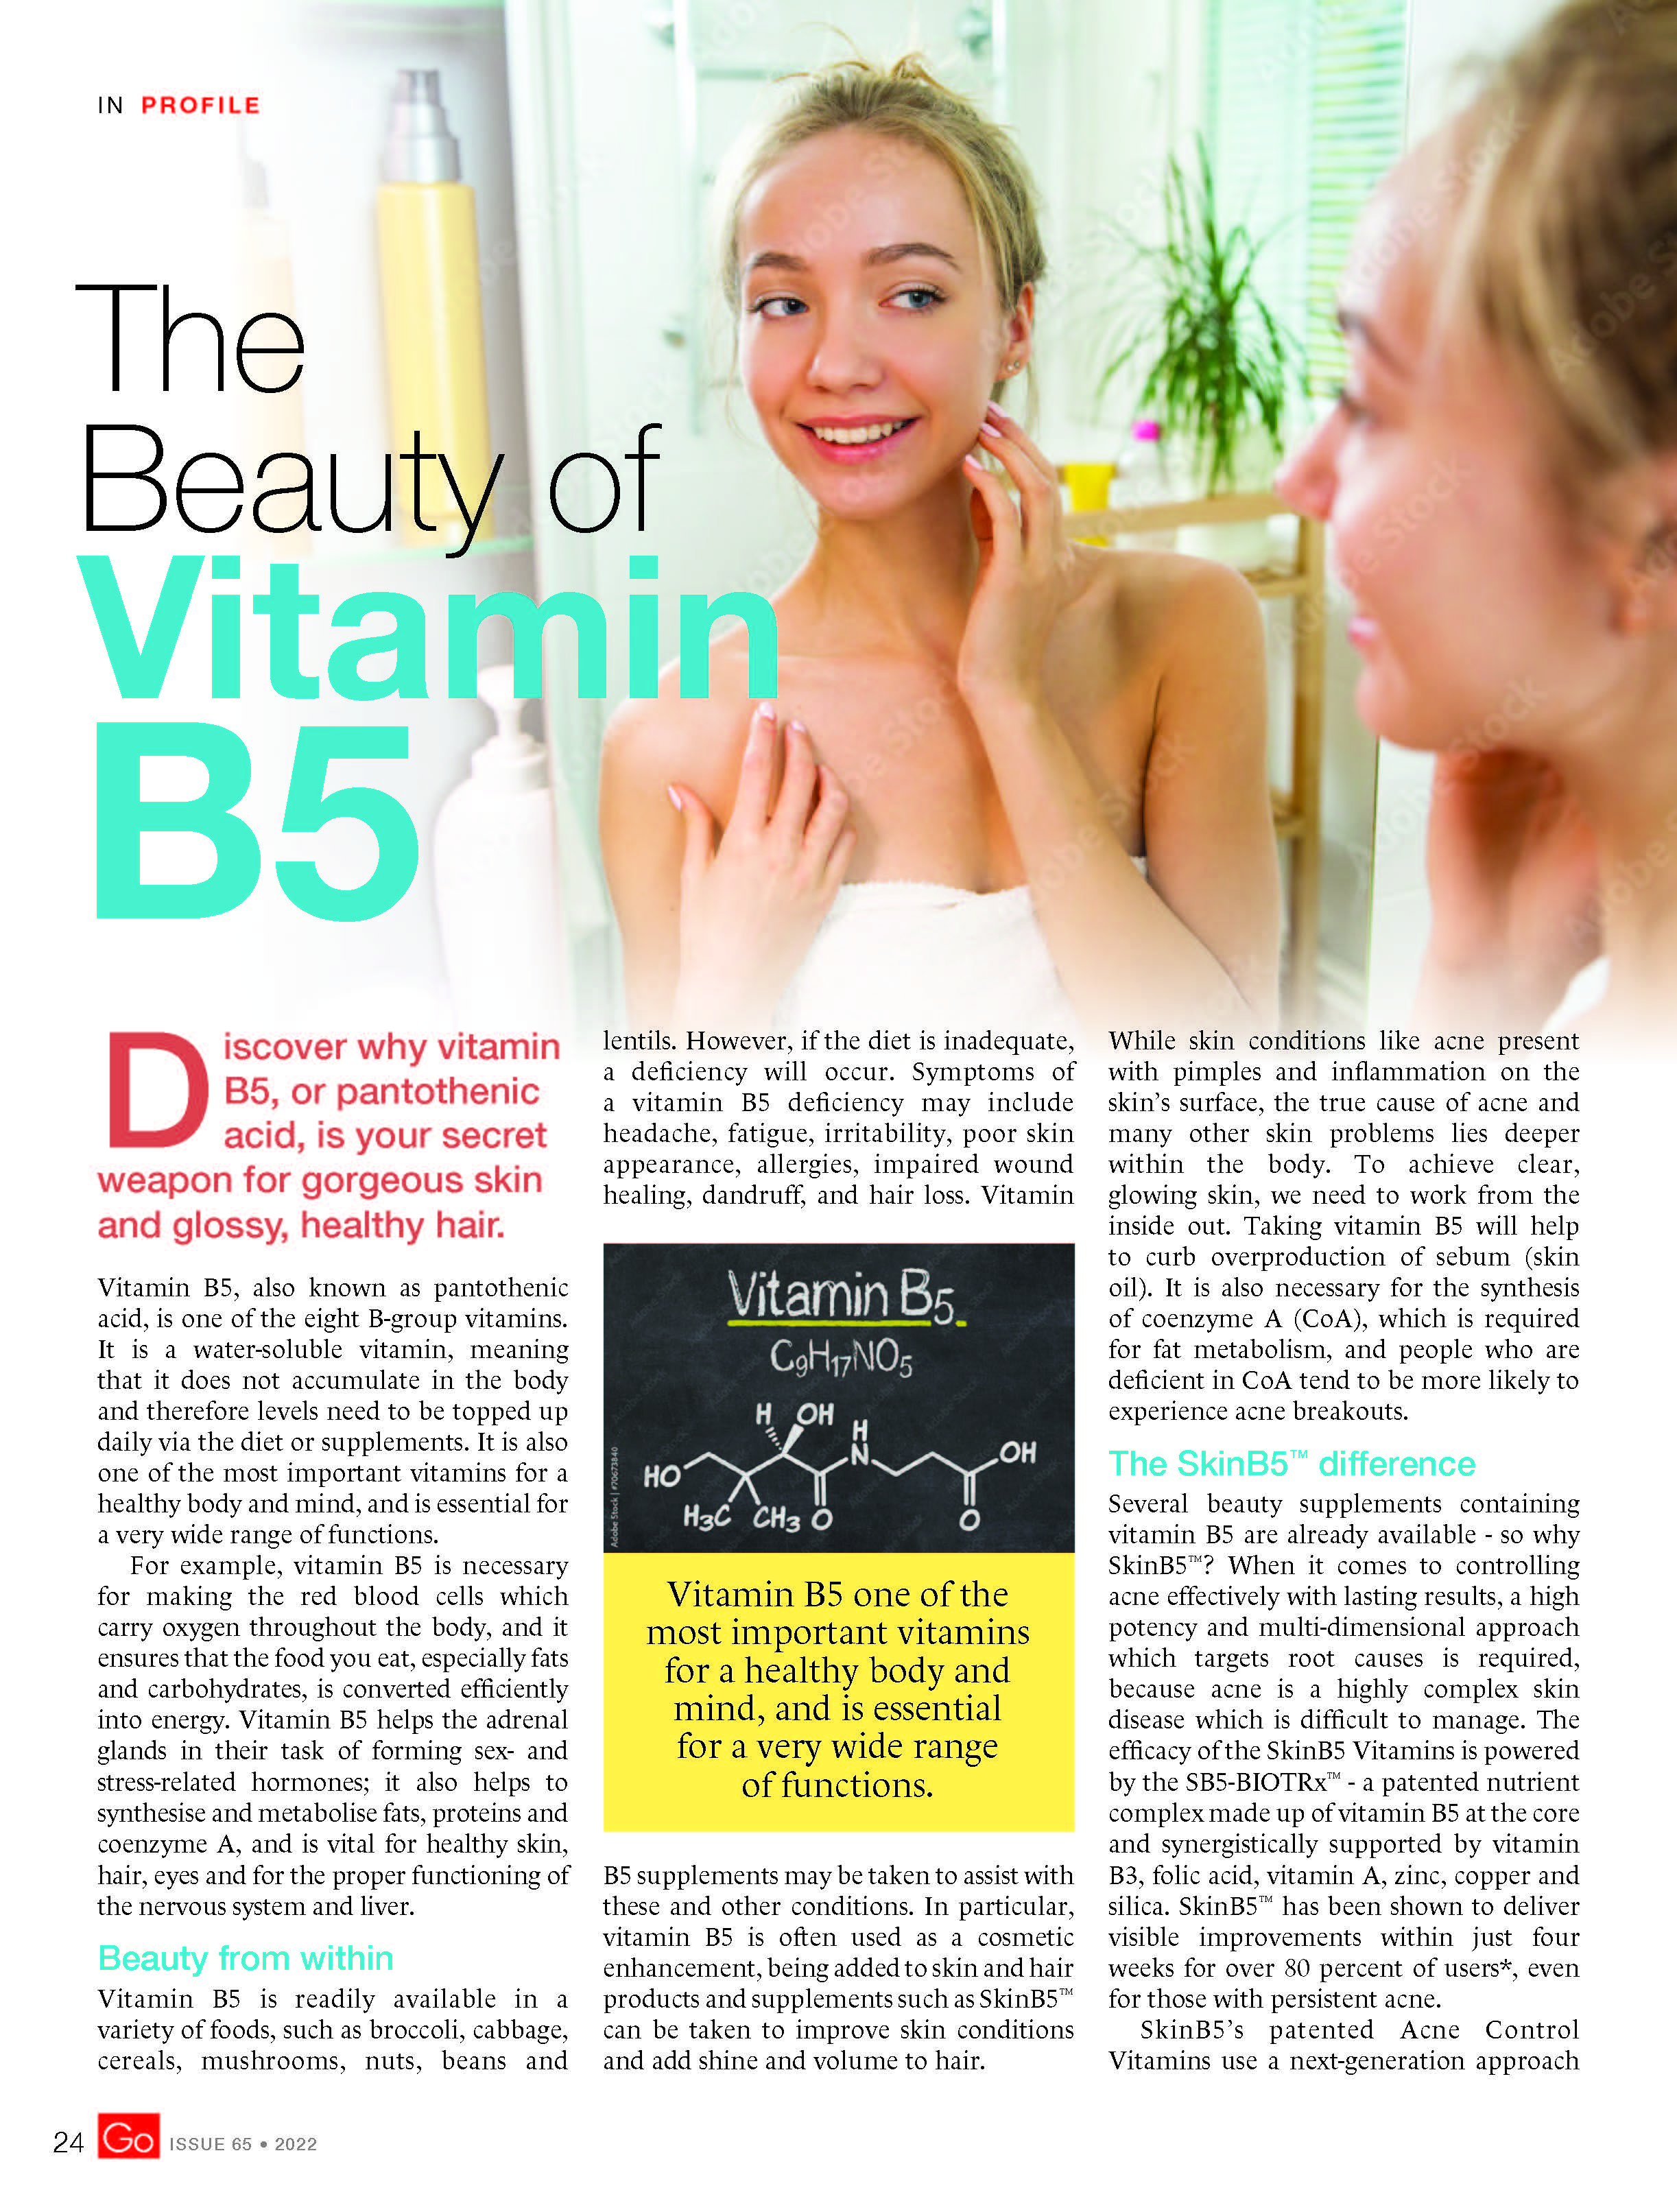 The Beauty of Vitamin B5